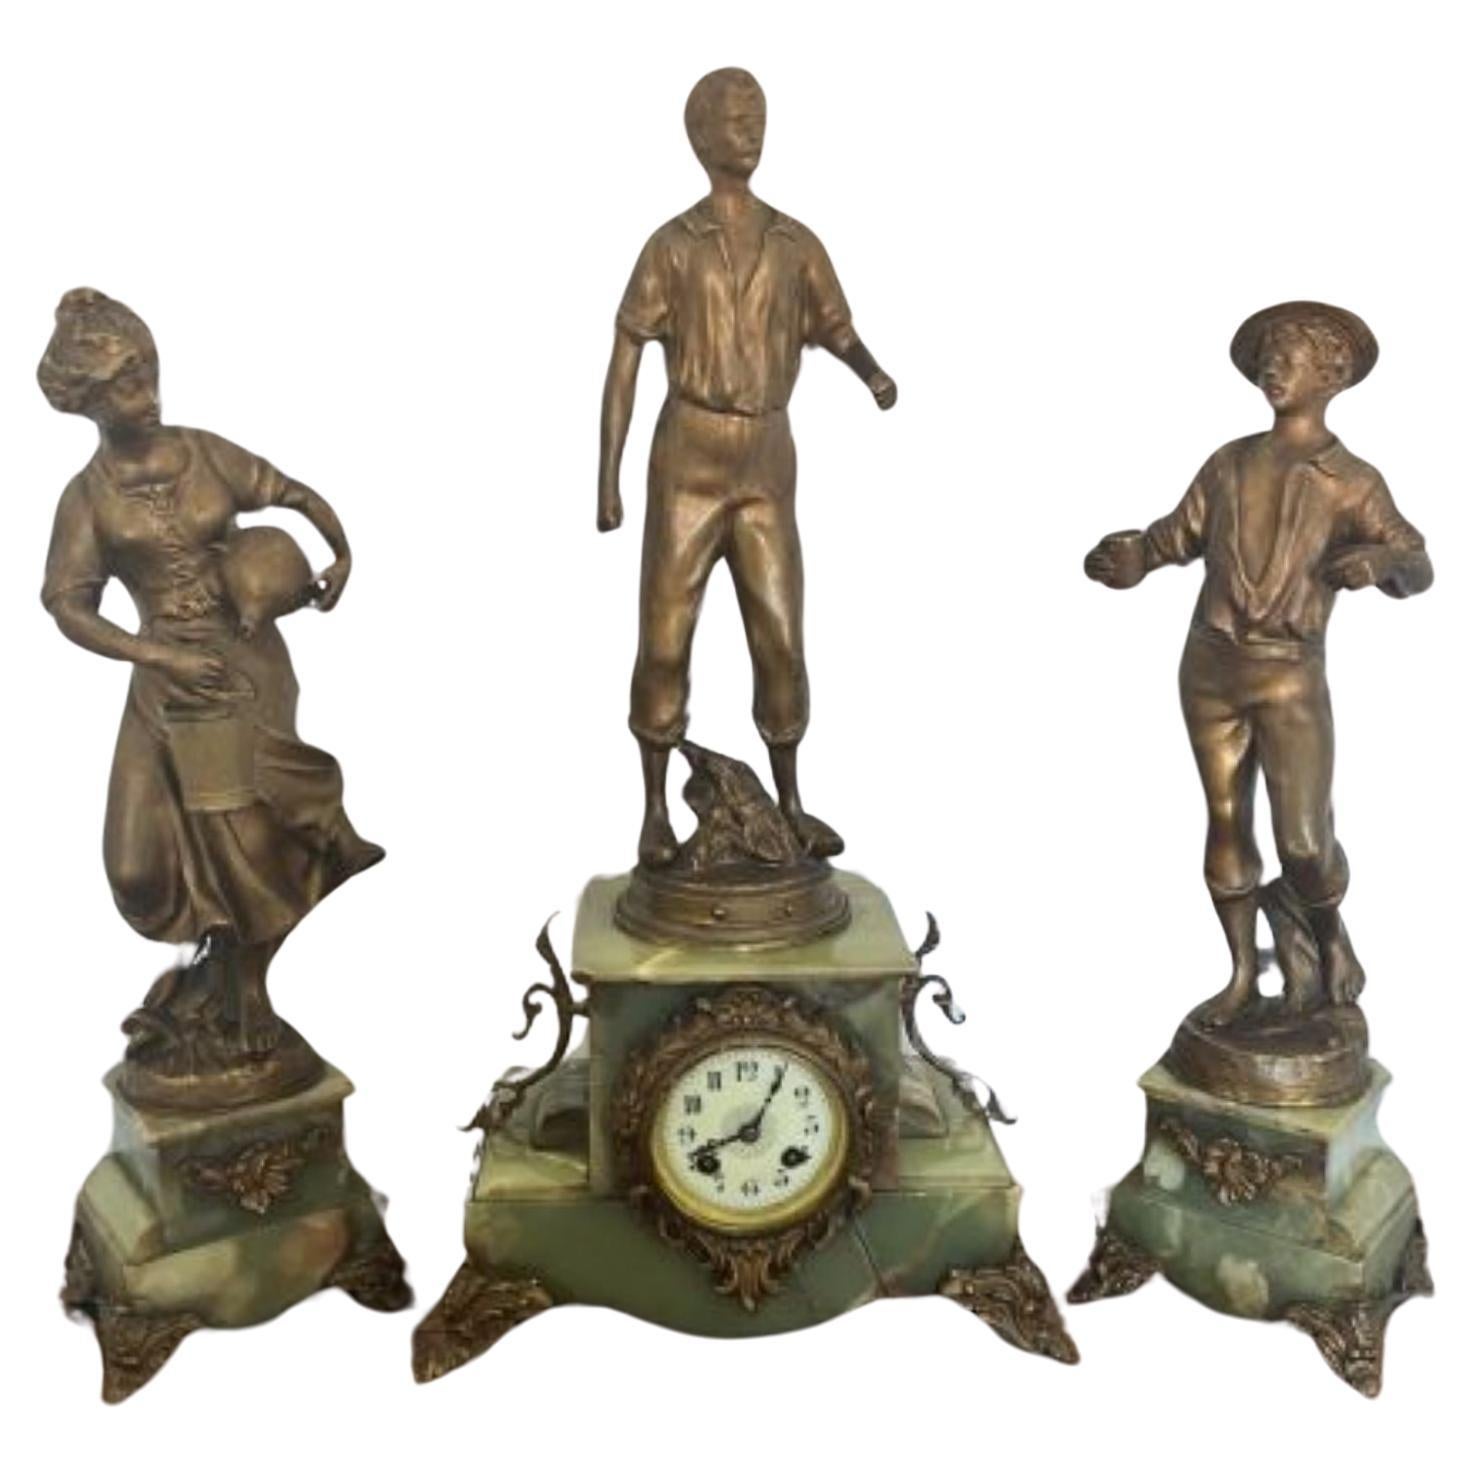 Hervorragende Qualität antiker viktorianischer französischer Uhrengarnituren 